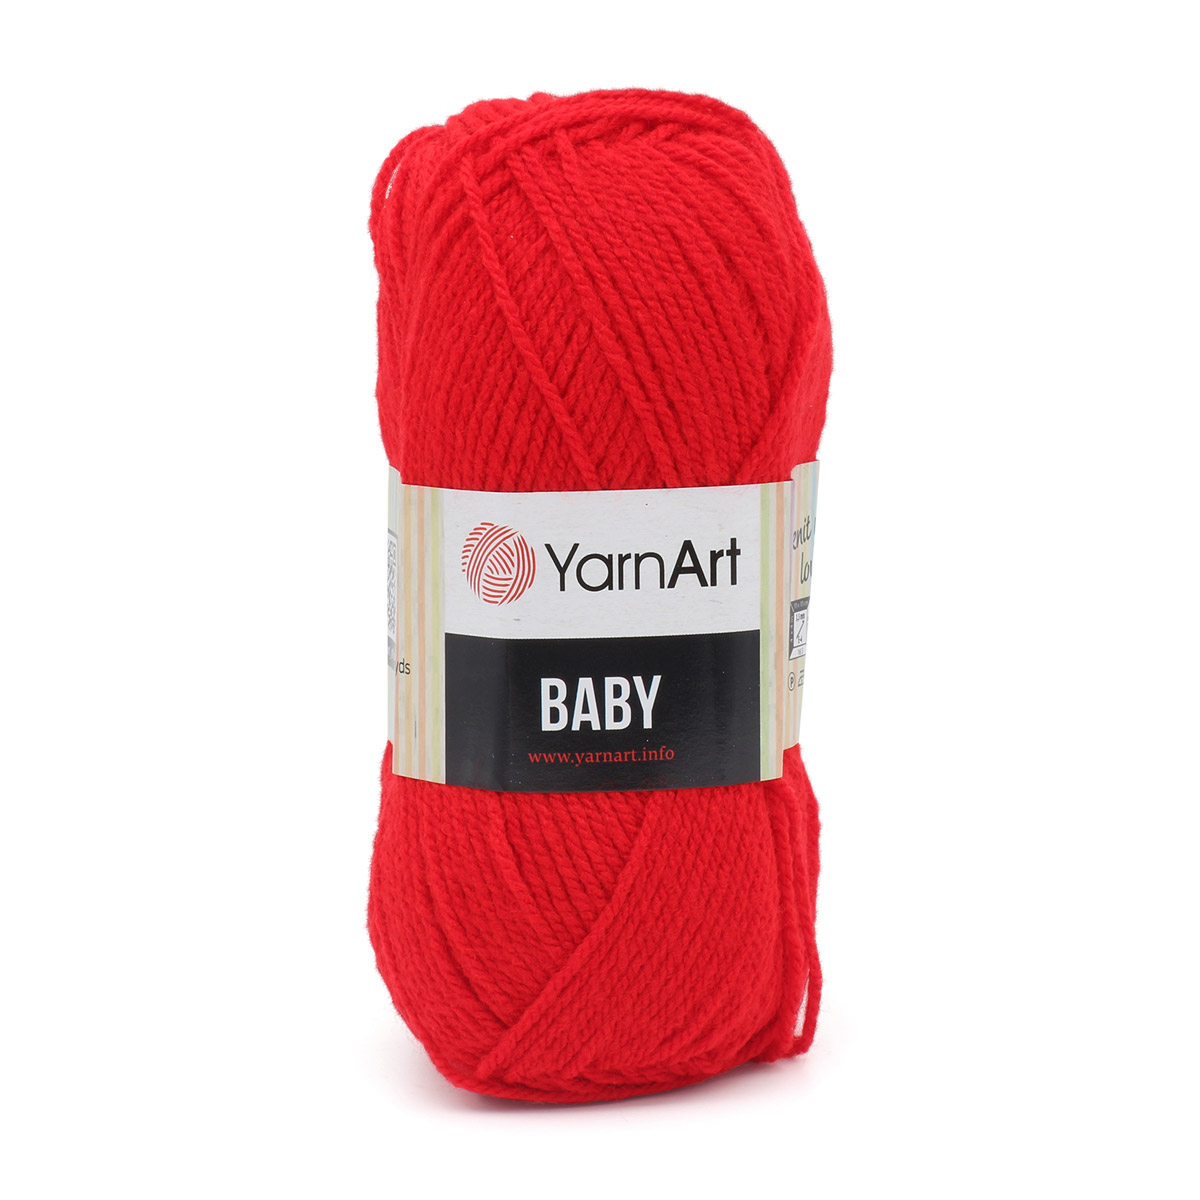 

Пряжа YarnArt Baby 50г, 150м (100% акрил) (156 красный), 5 мотков, Baby